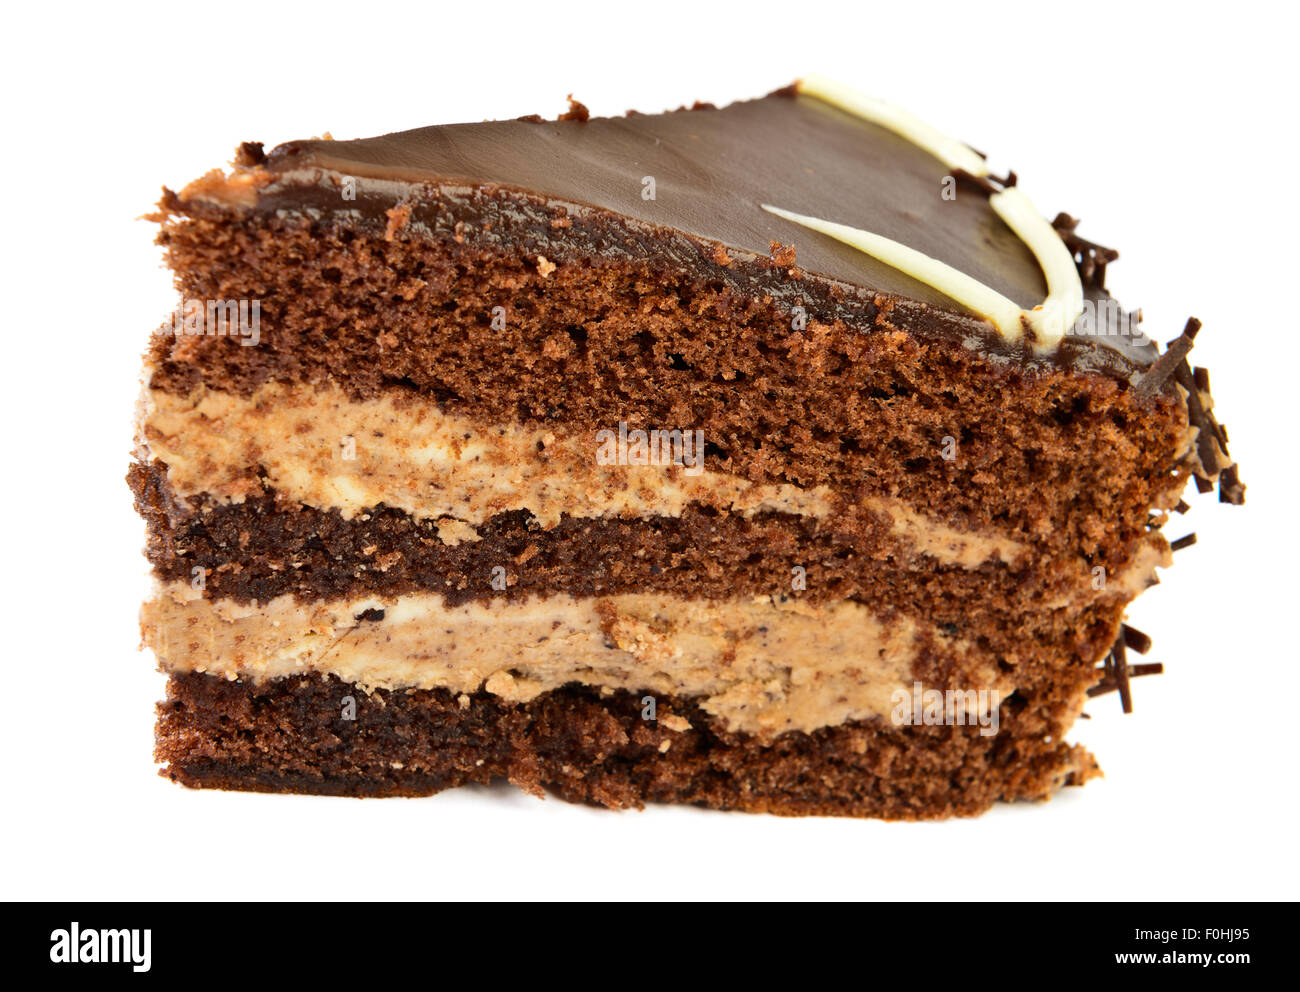 Chocolate cake slice on white background Stock Photo